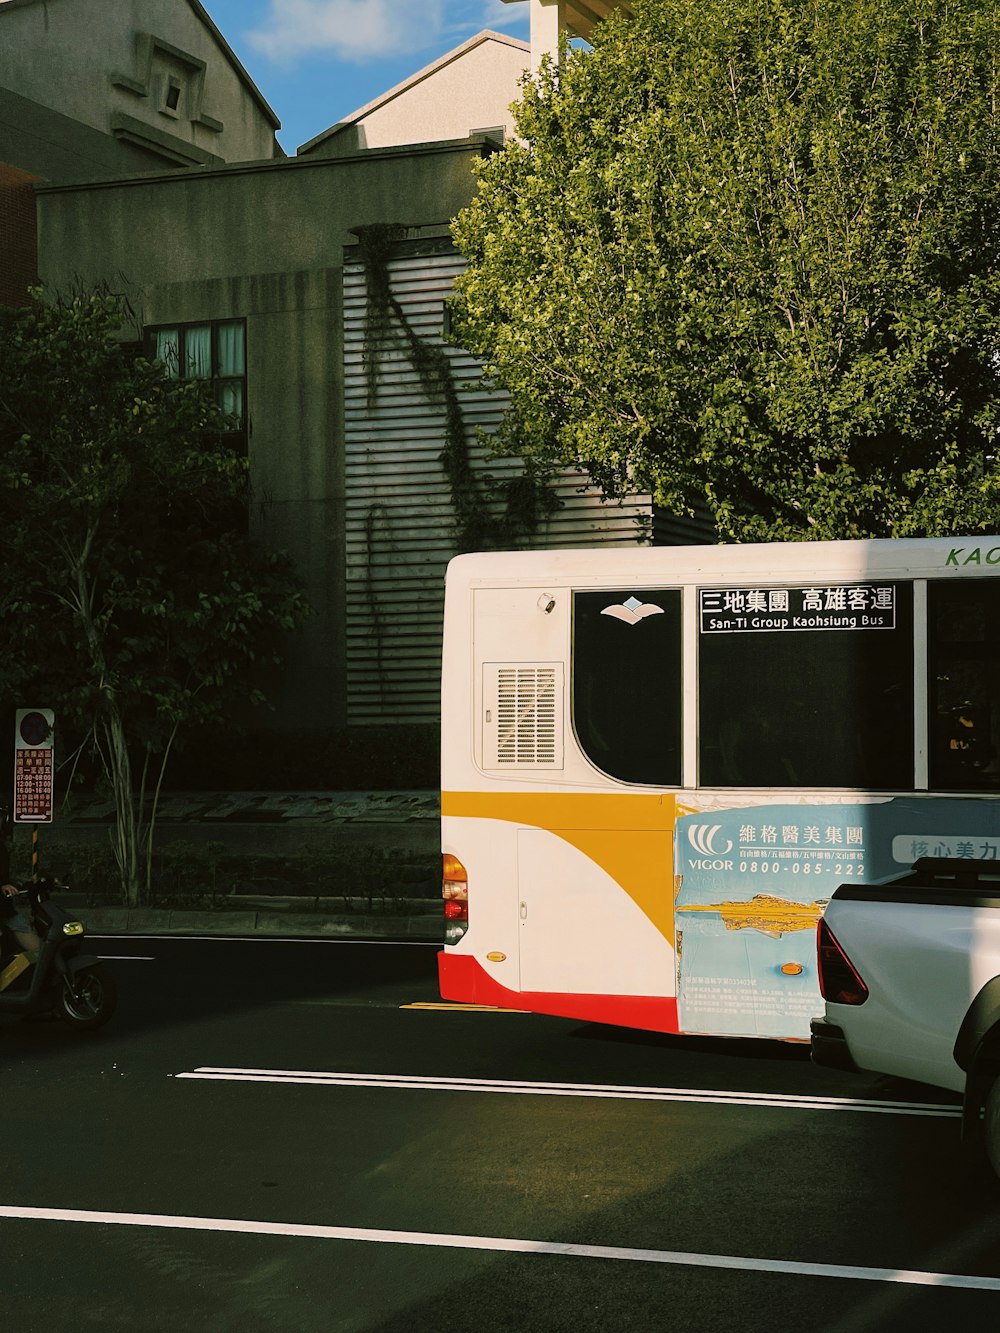 ein Bus, der am Straßenrand geparkt ist